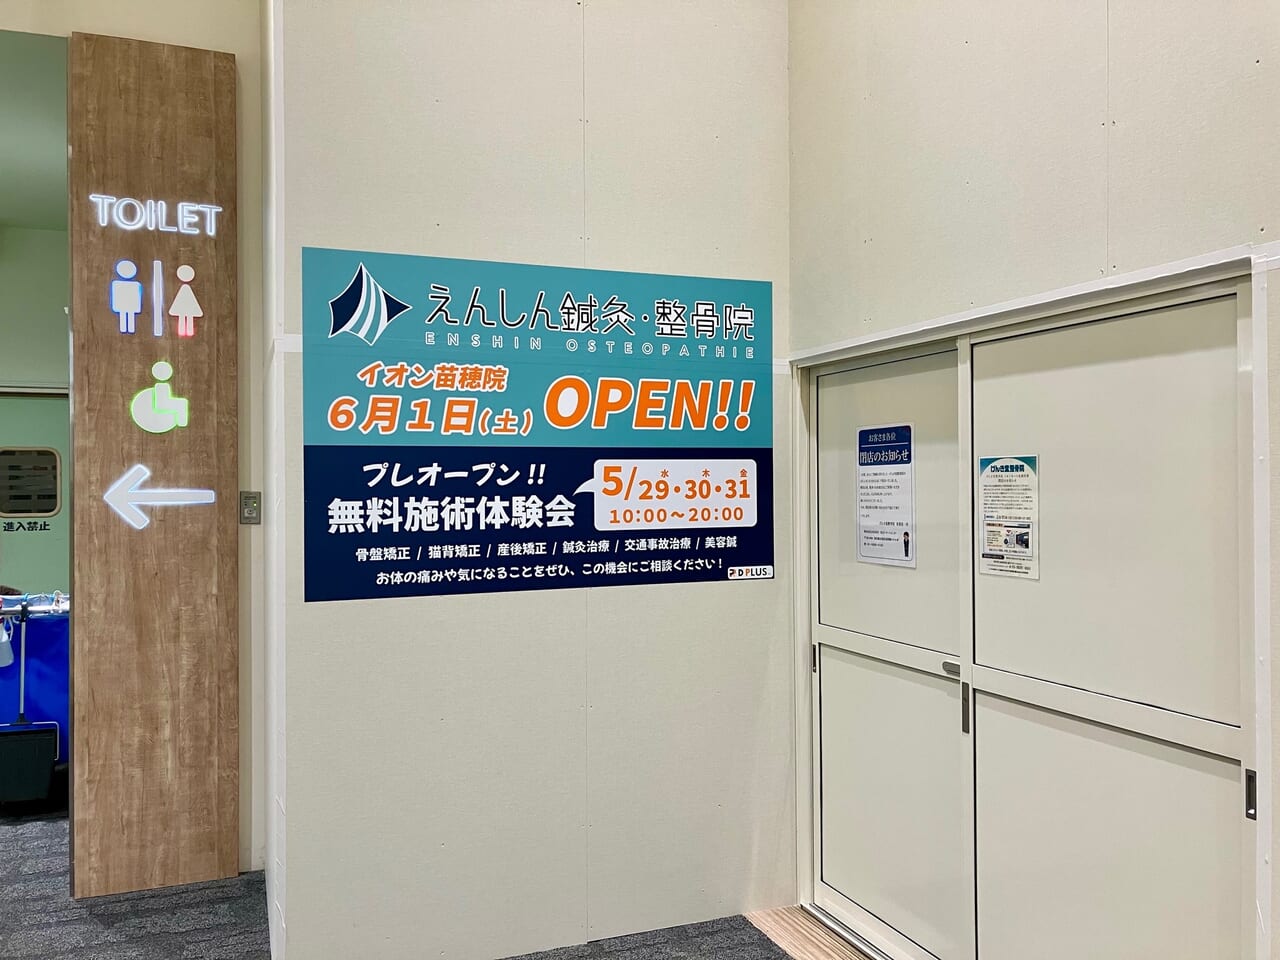 イオンモール札幌苗穂の「げんき堂整骨院」が閉店していました。次にオープンする店舗も決まっているようですよ。